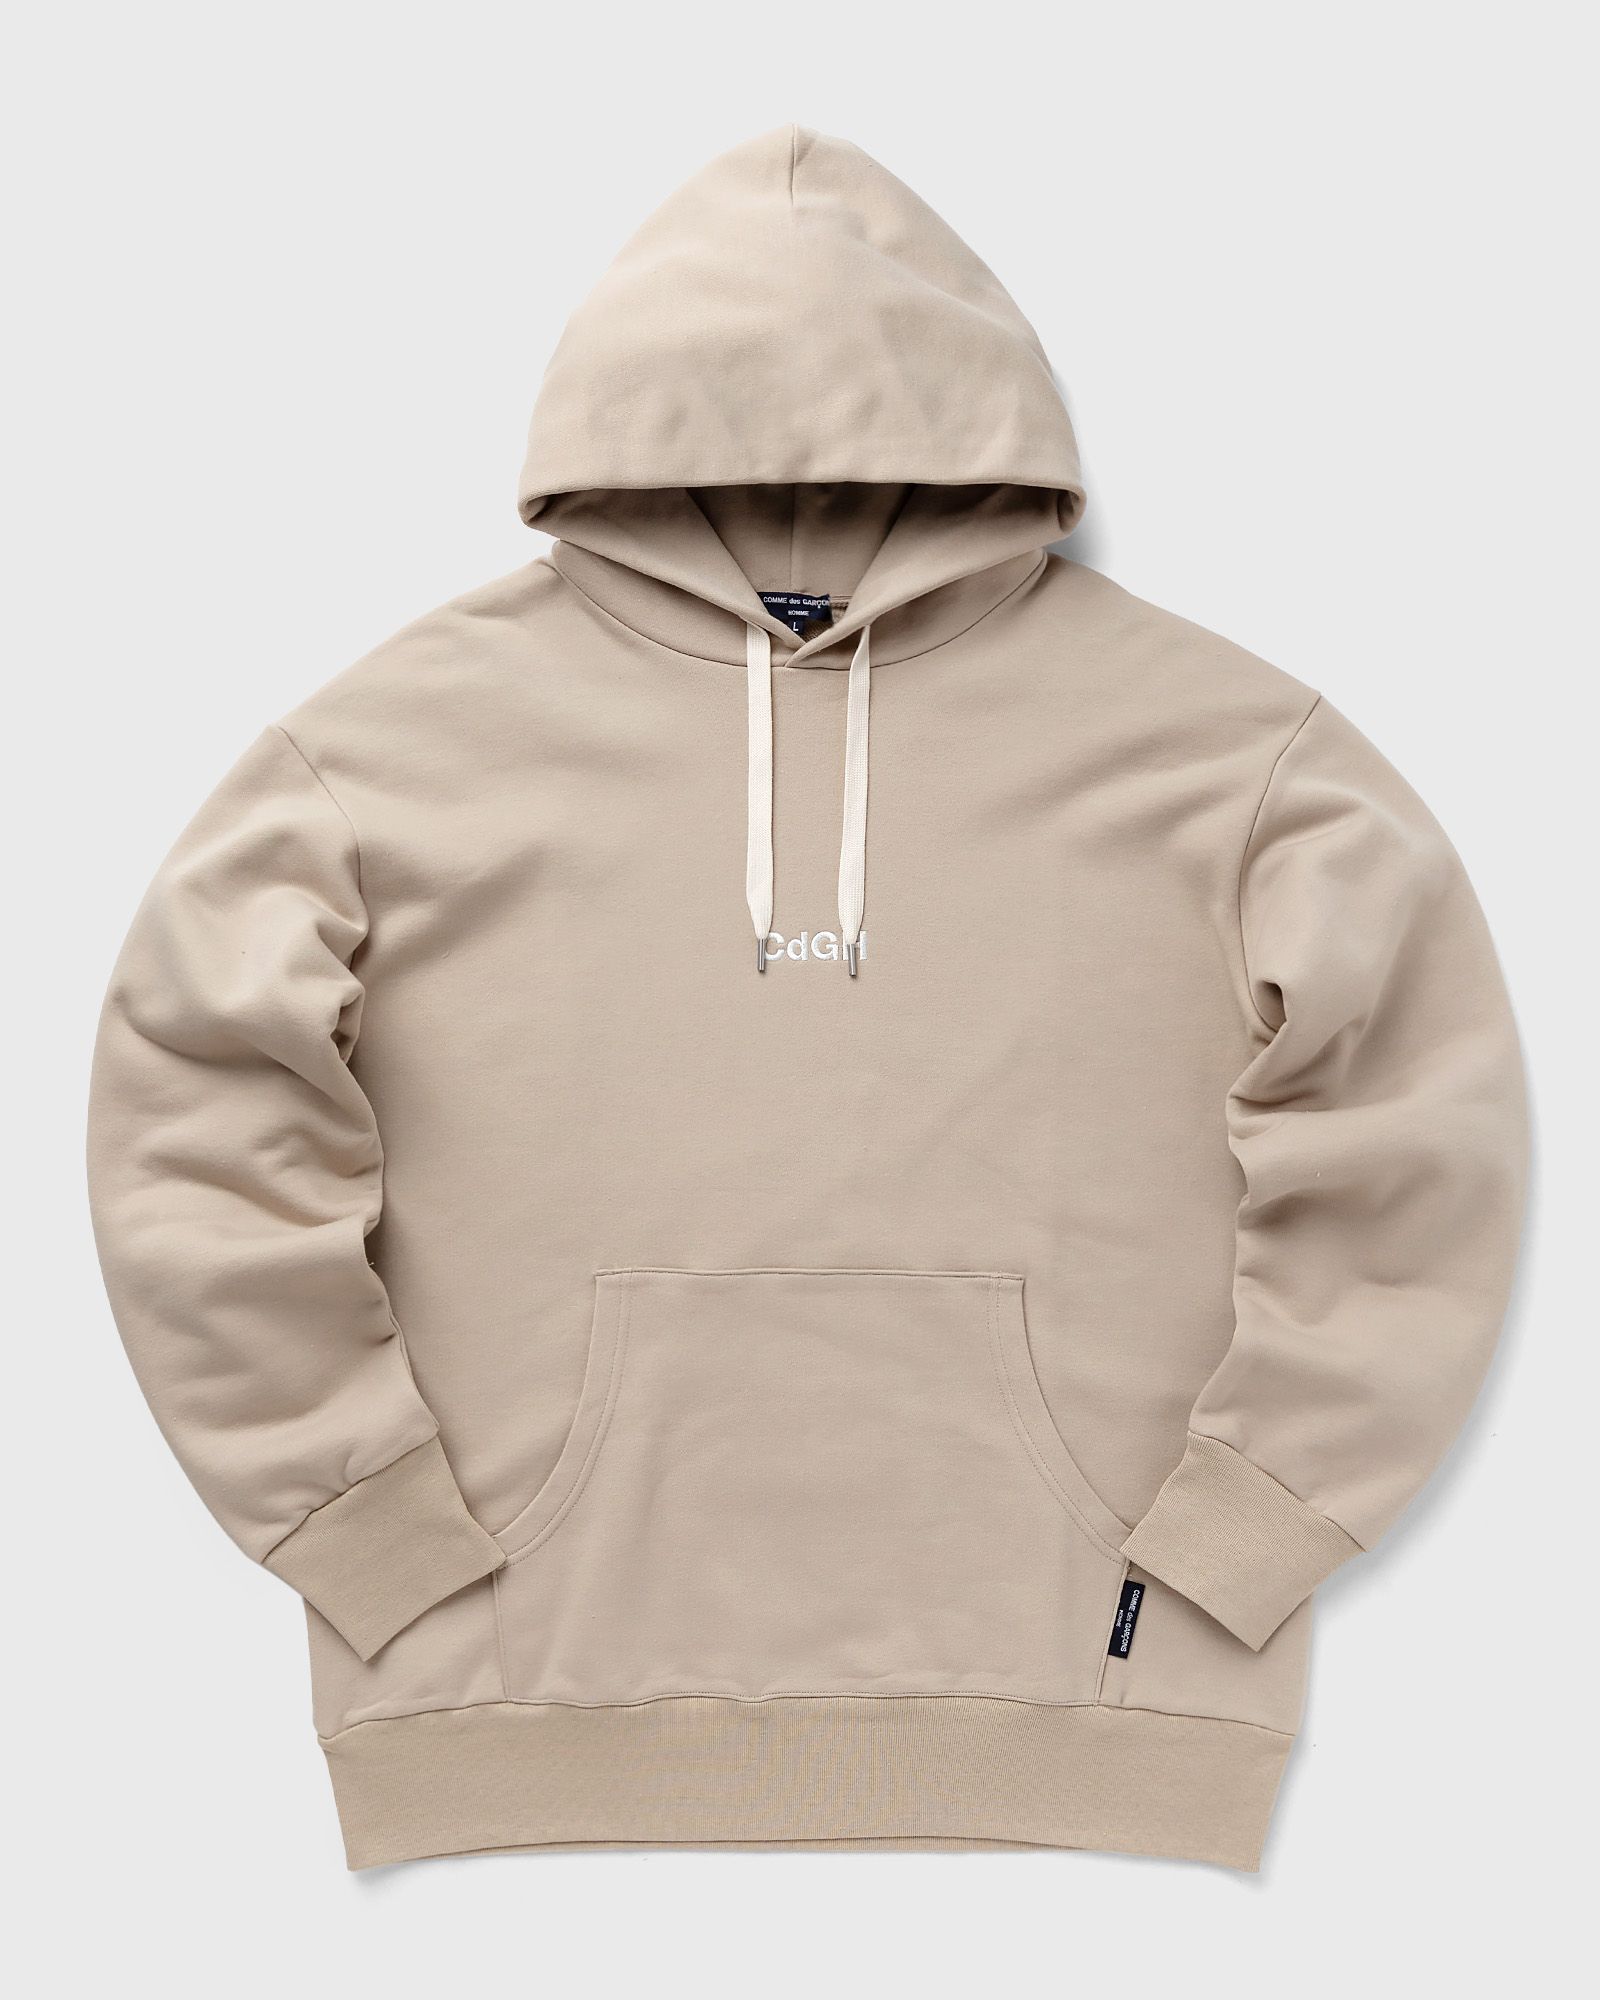 Comme des Garçons Homme - logo hoodie men hoodies beige in größe:xl